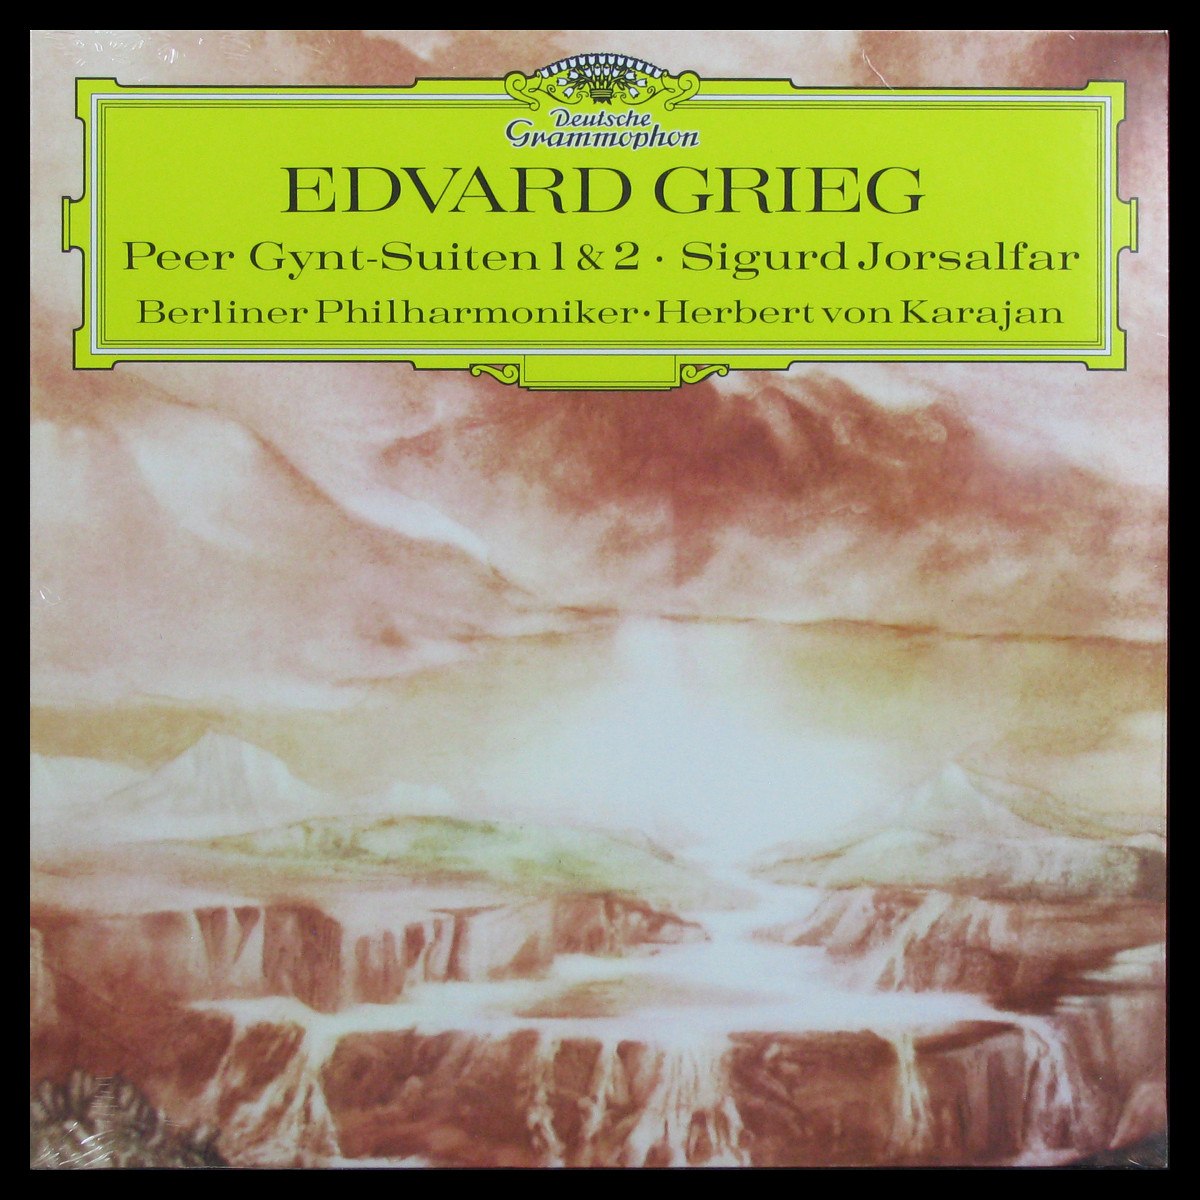 Edvard Grieg: Peer Gynt-Suiten 1 & 2 / Sigurd Jorsalfar